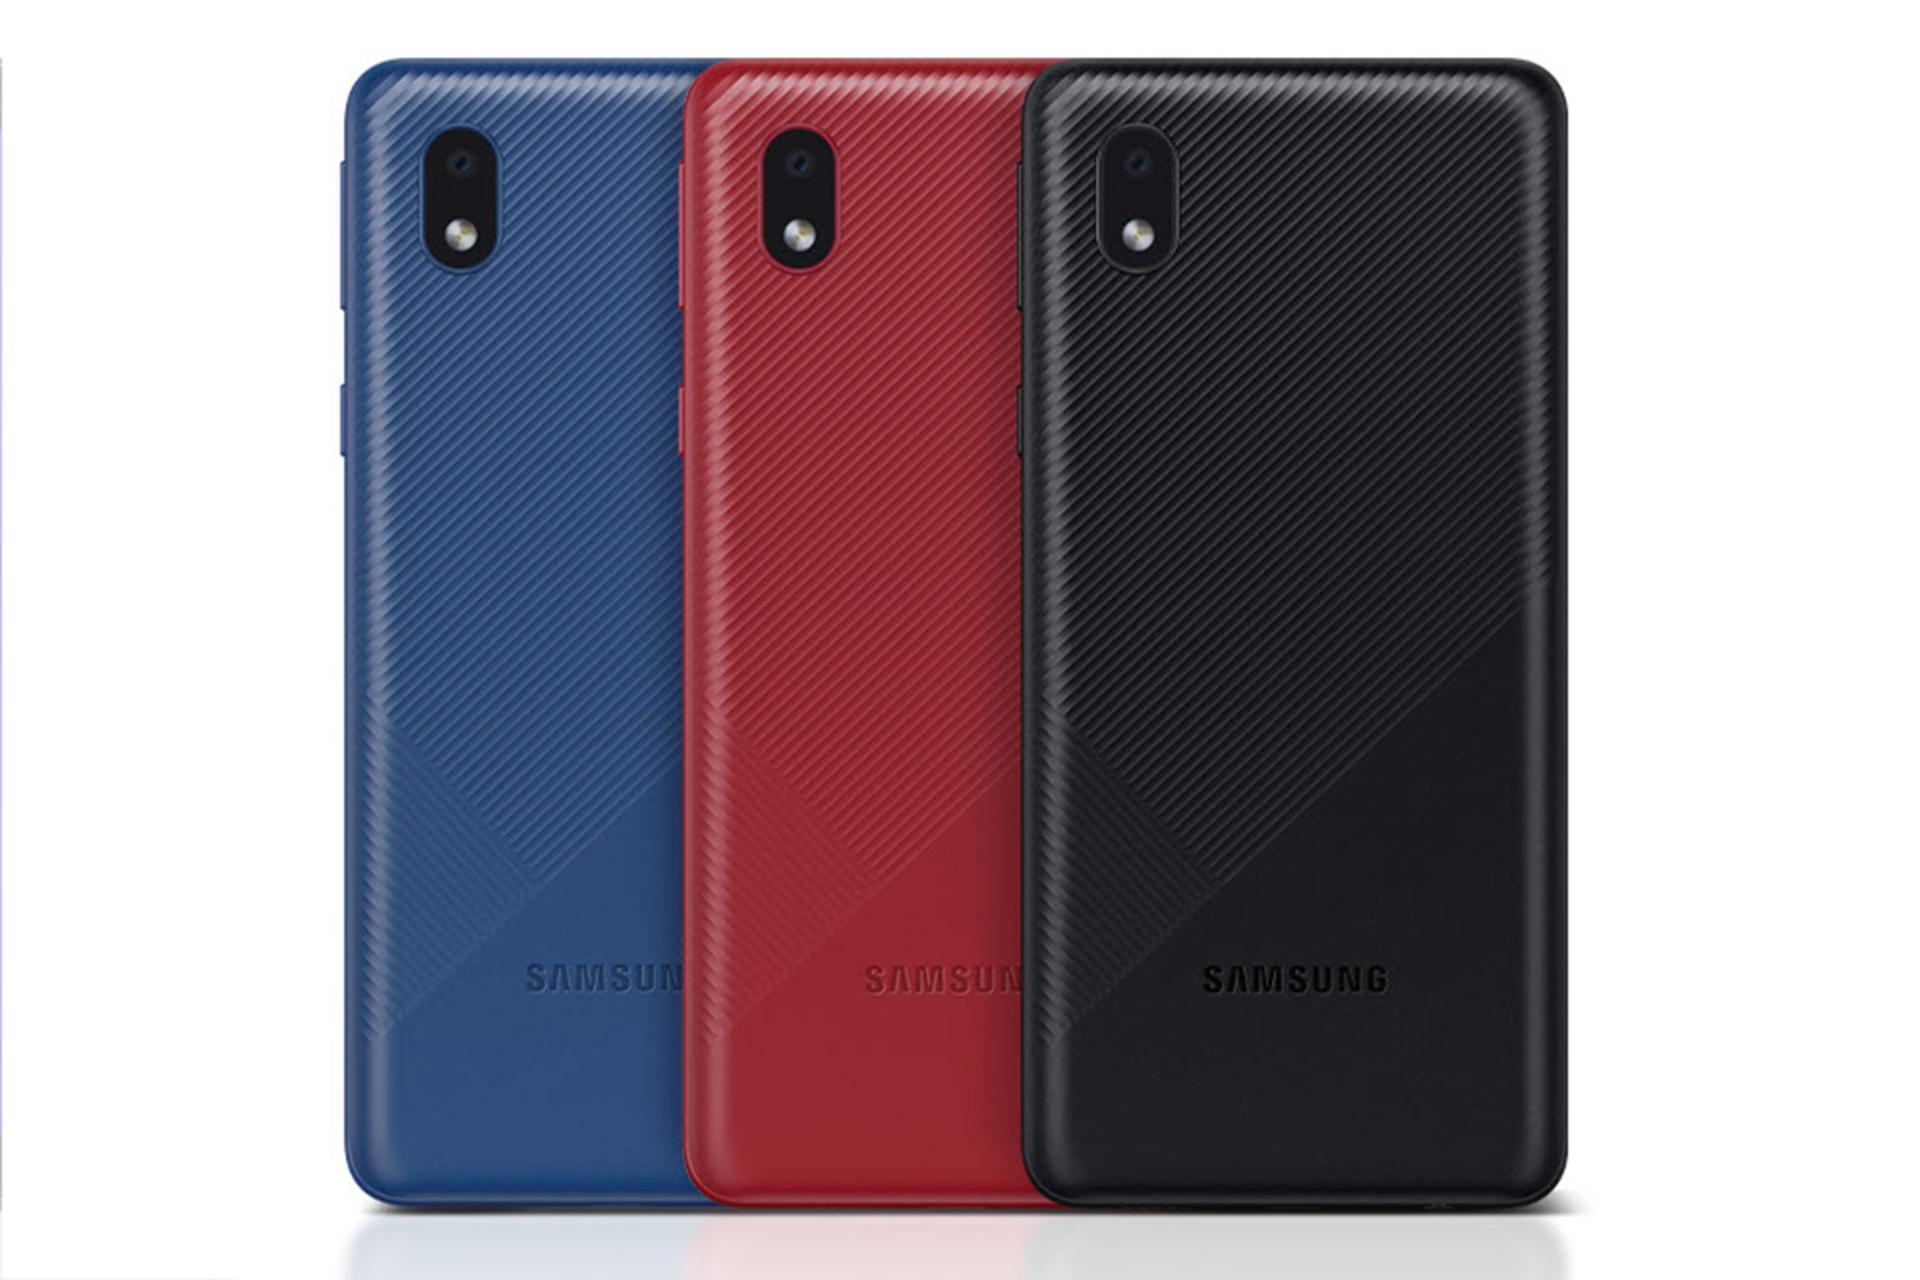 نمای پشت گوشی سامسونگ گلکسی A01 کور در سه رنگ آبی قرمز و مشکی